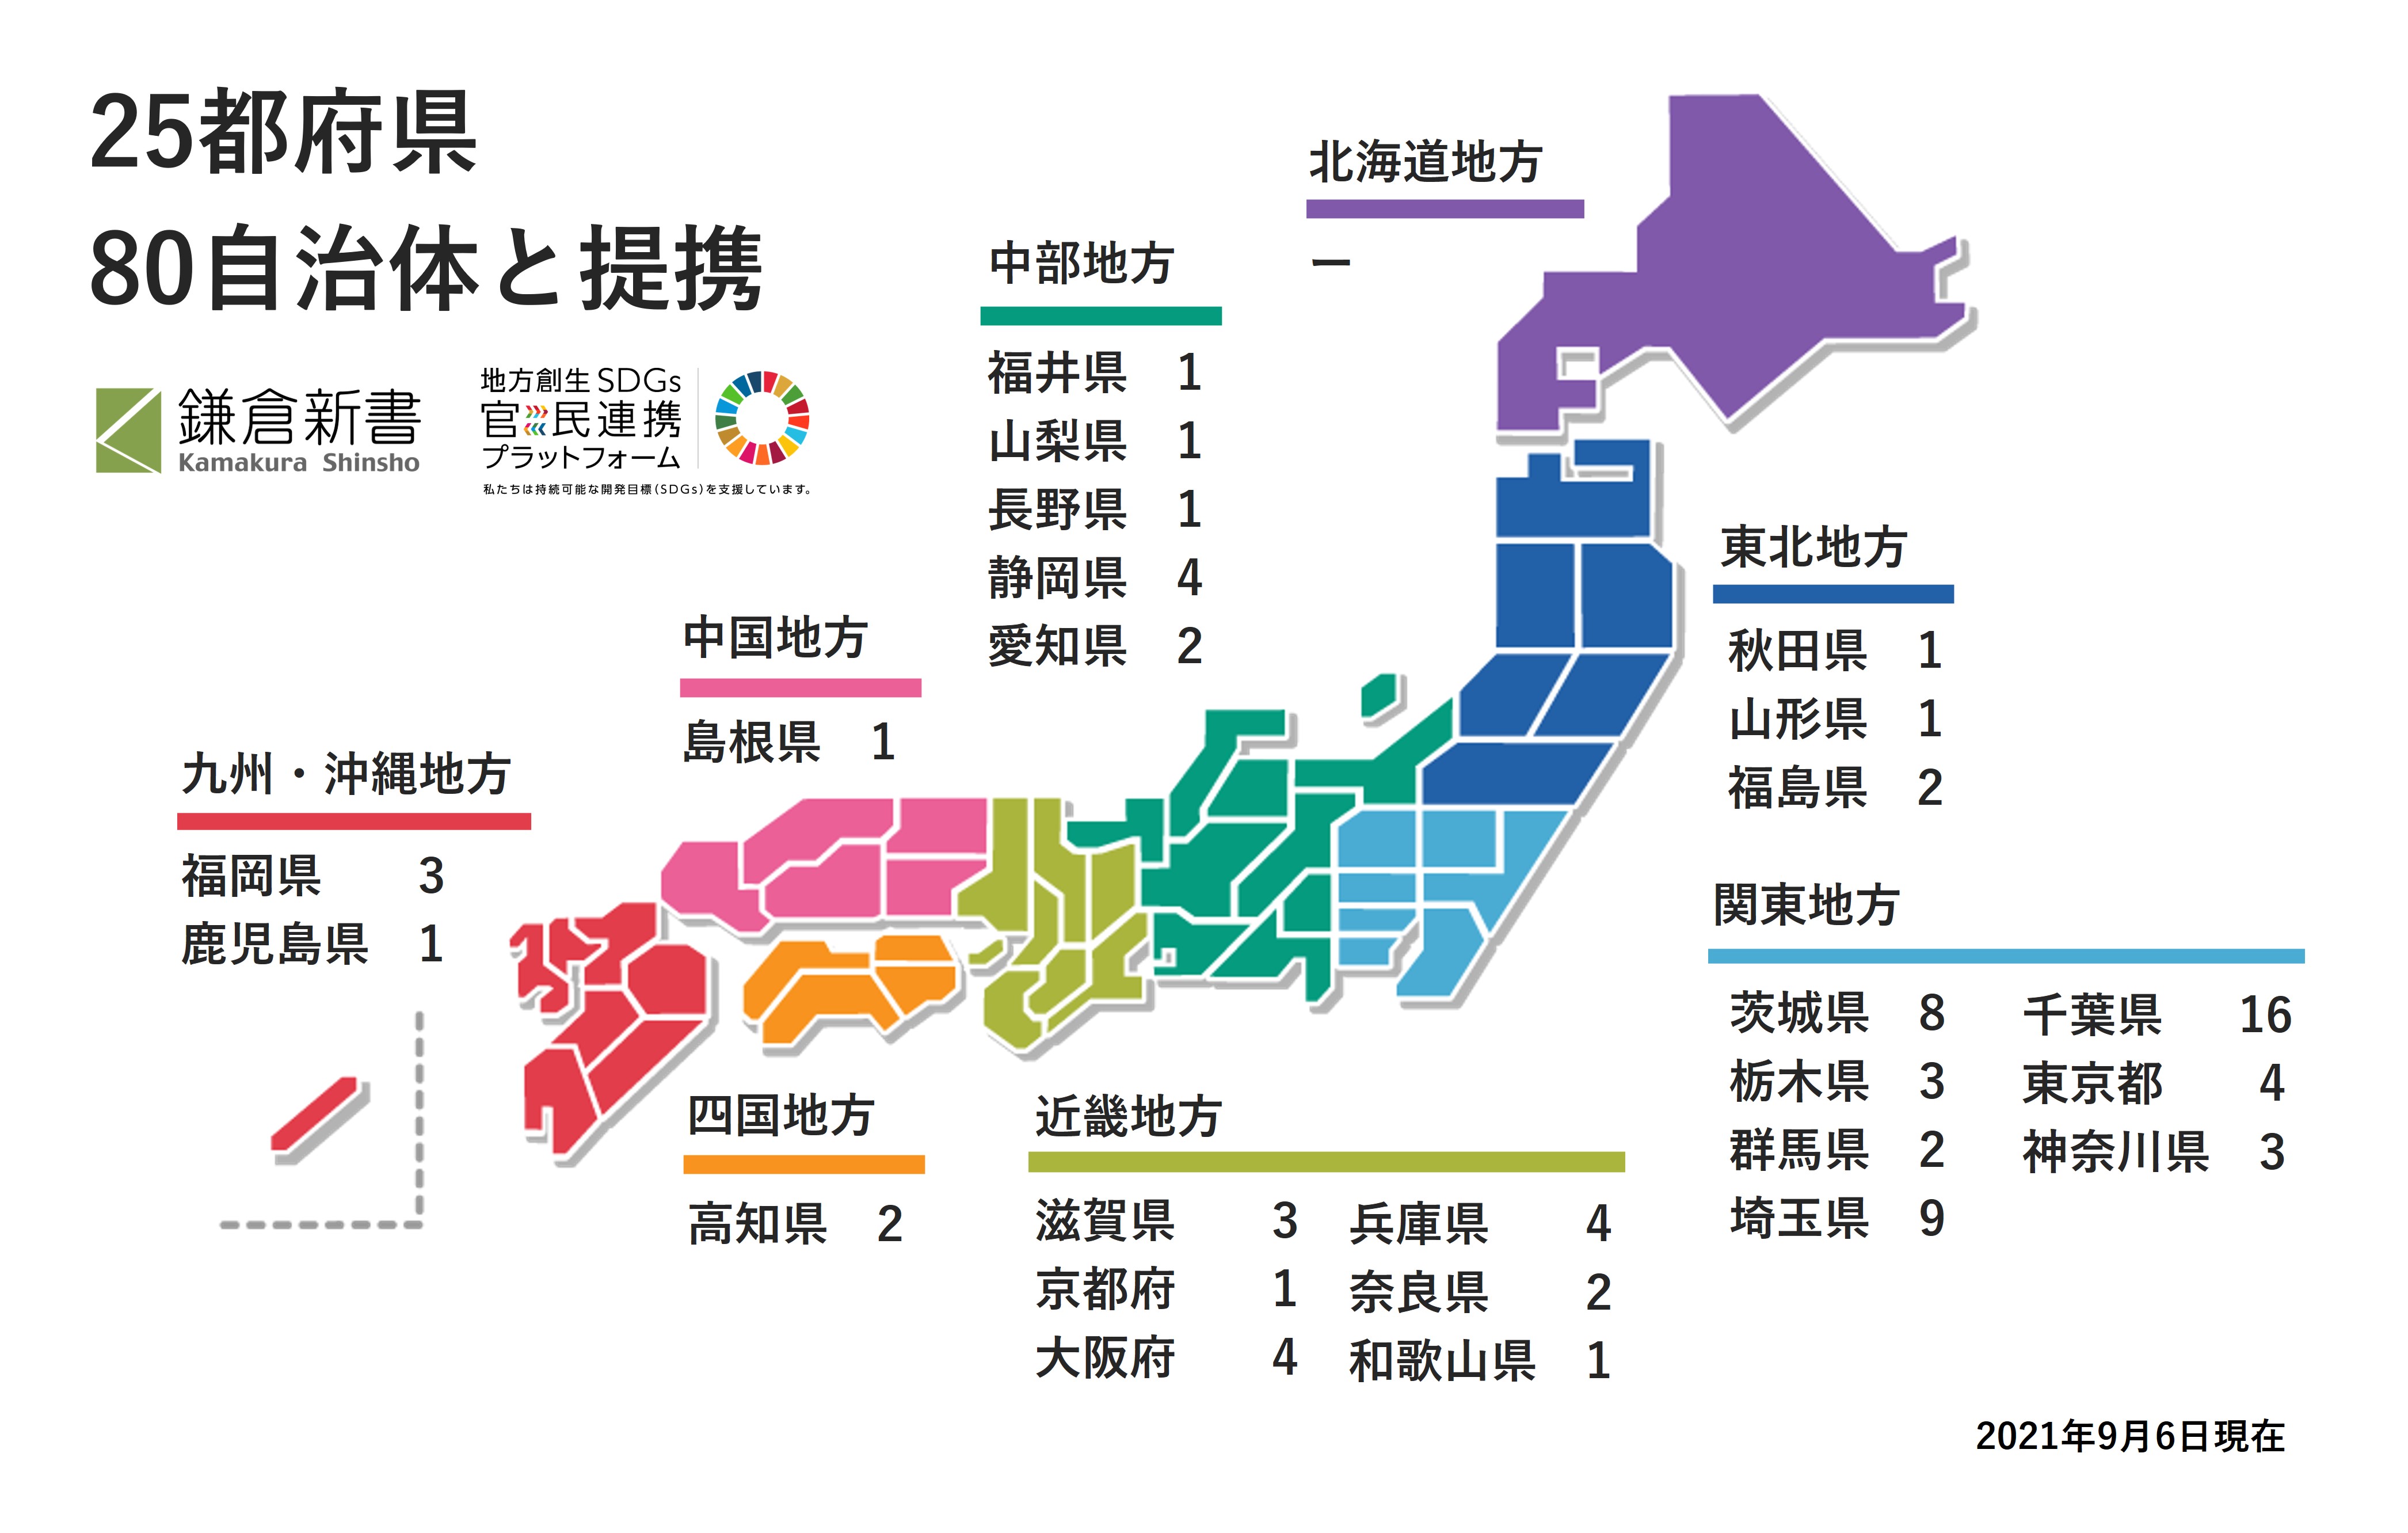 鎌倉新書の官民協働事業、開始半年で25都府県80自治体と提携のサブ画像1